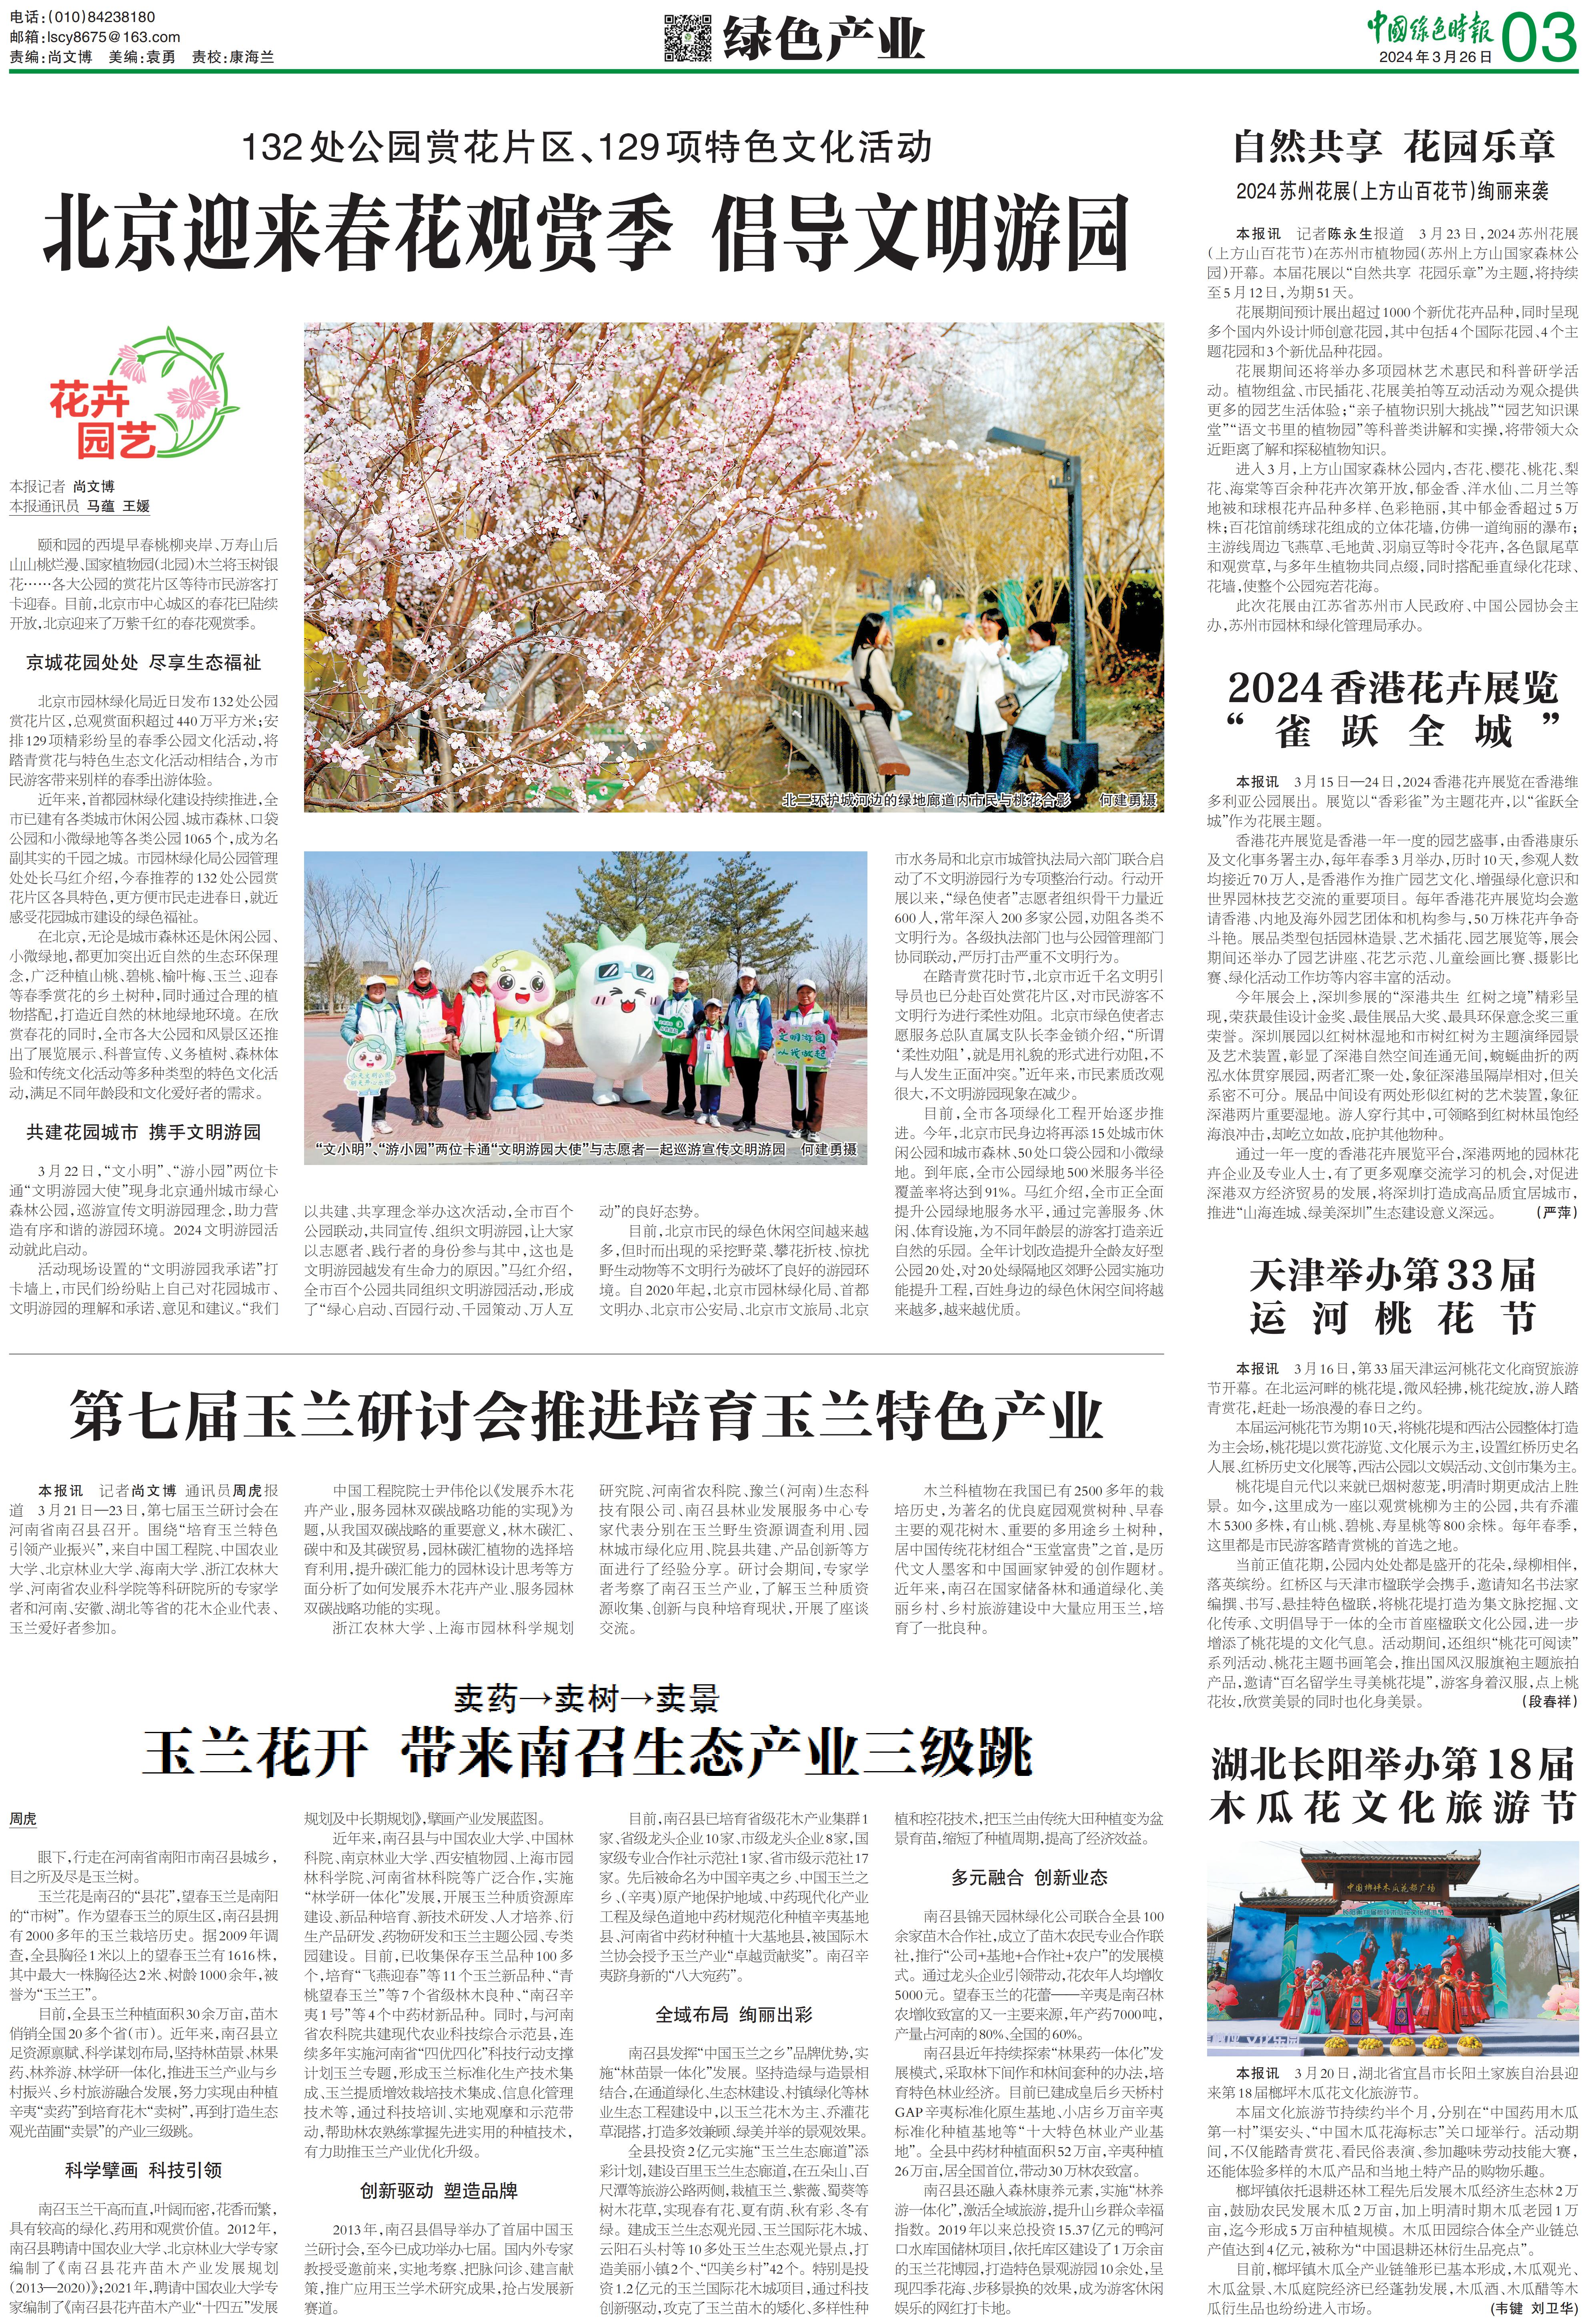 0326中国绿色时报-北京迎来春花观赏季 倡导文明游园_00.jpg